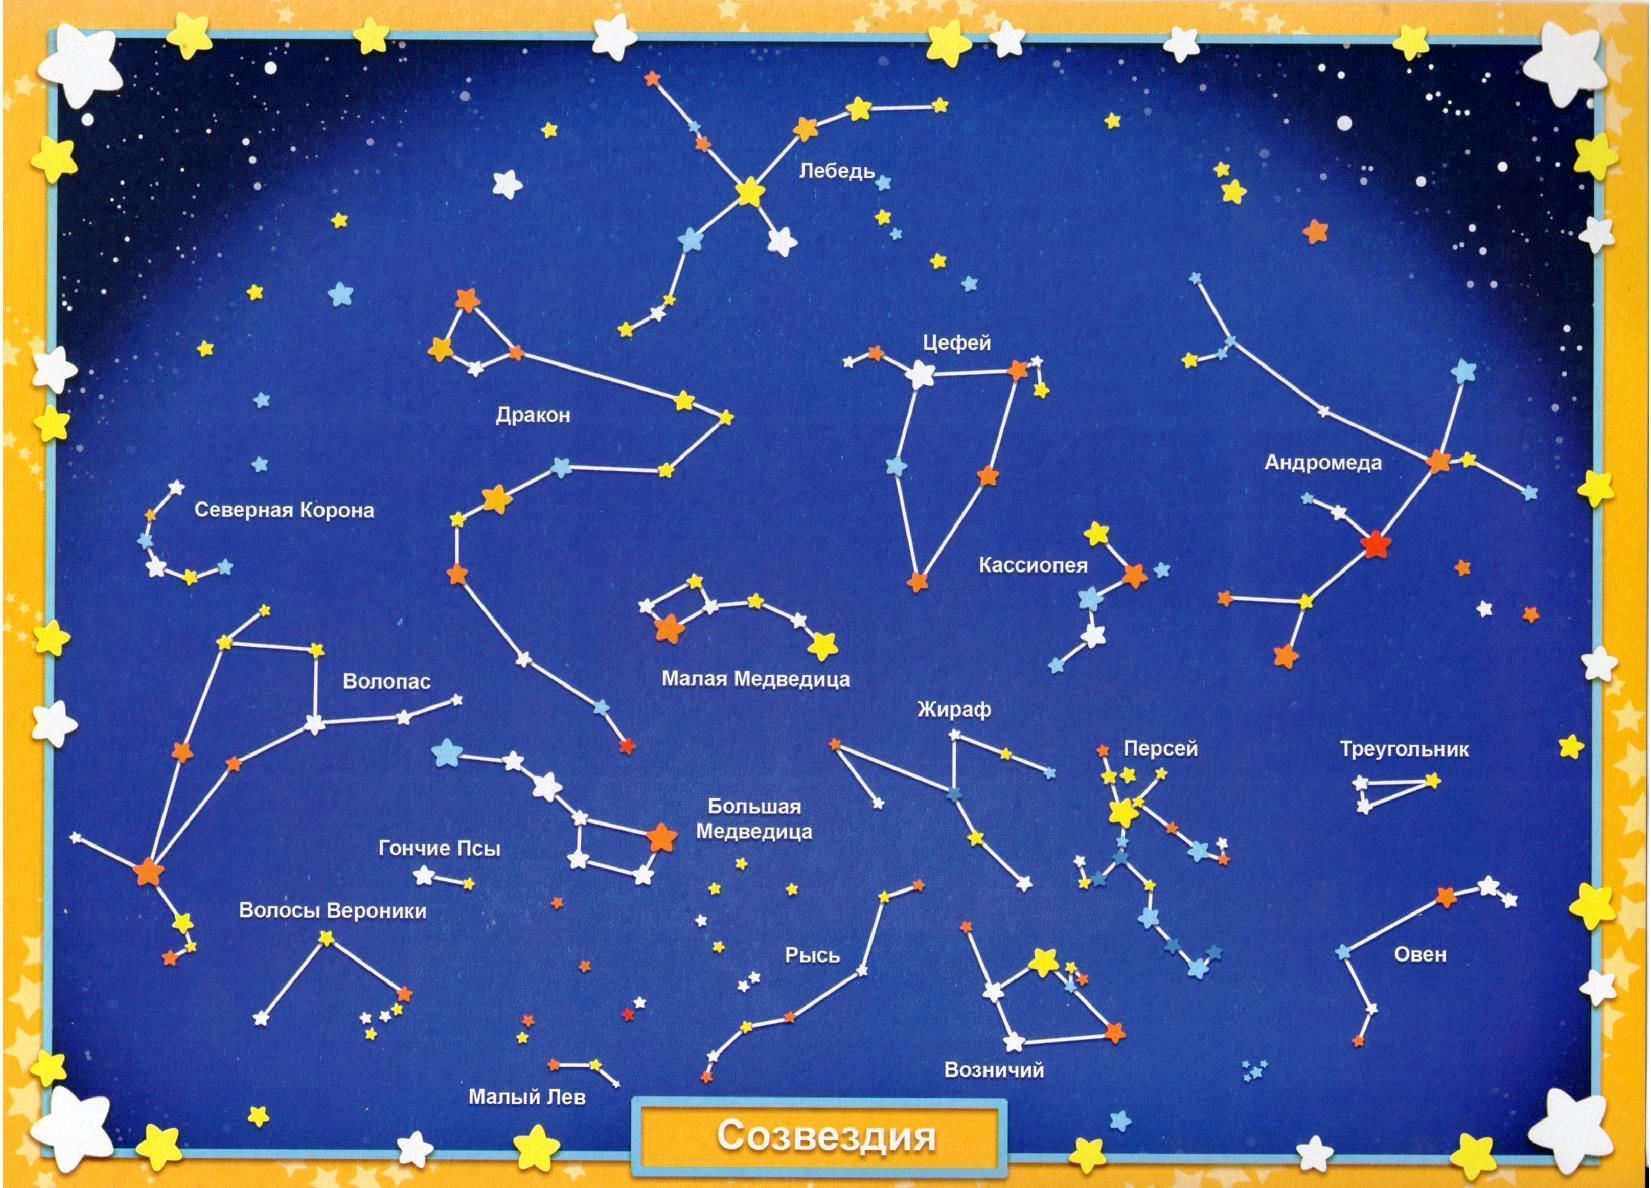 Звезды и их названия. Основные созвездия звездного неба. Схематическое изображение созвездий для детей и их названия. Звездное небо созвездия для детей. Карта звездного неба с названиями созвездий.